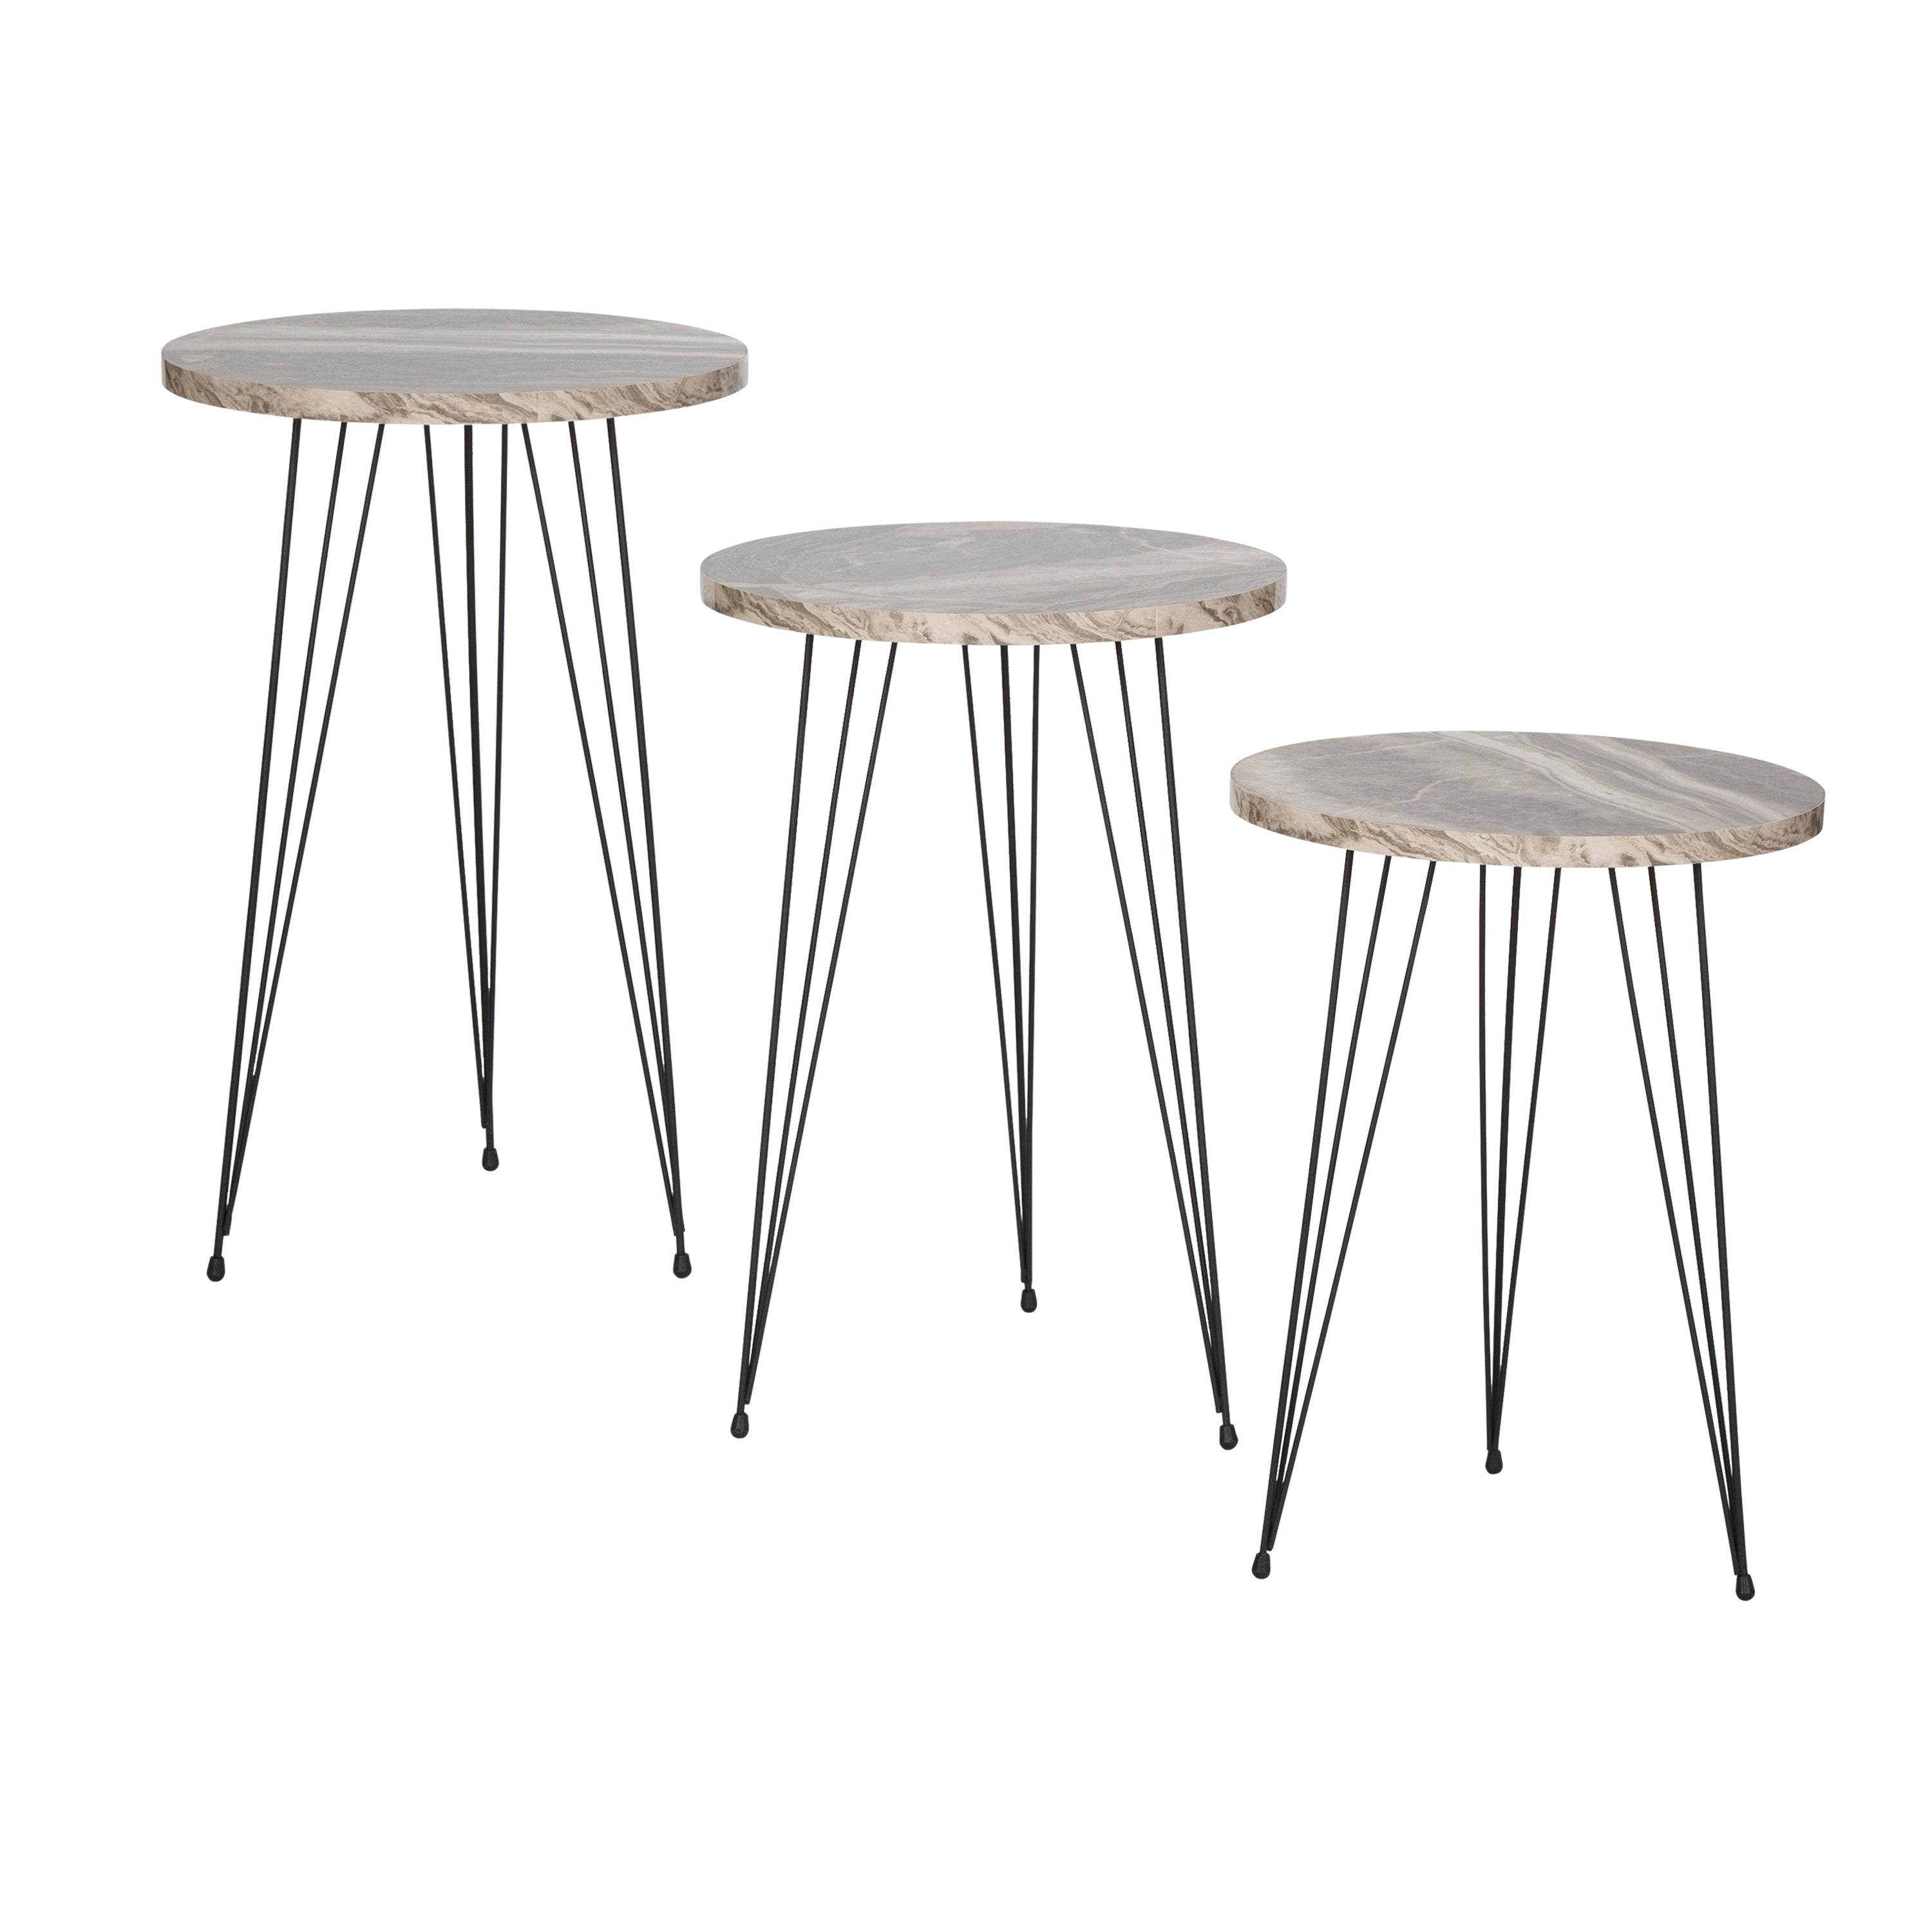 Terek Set of 3 Round Side Tables - Grey Marble